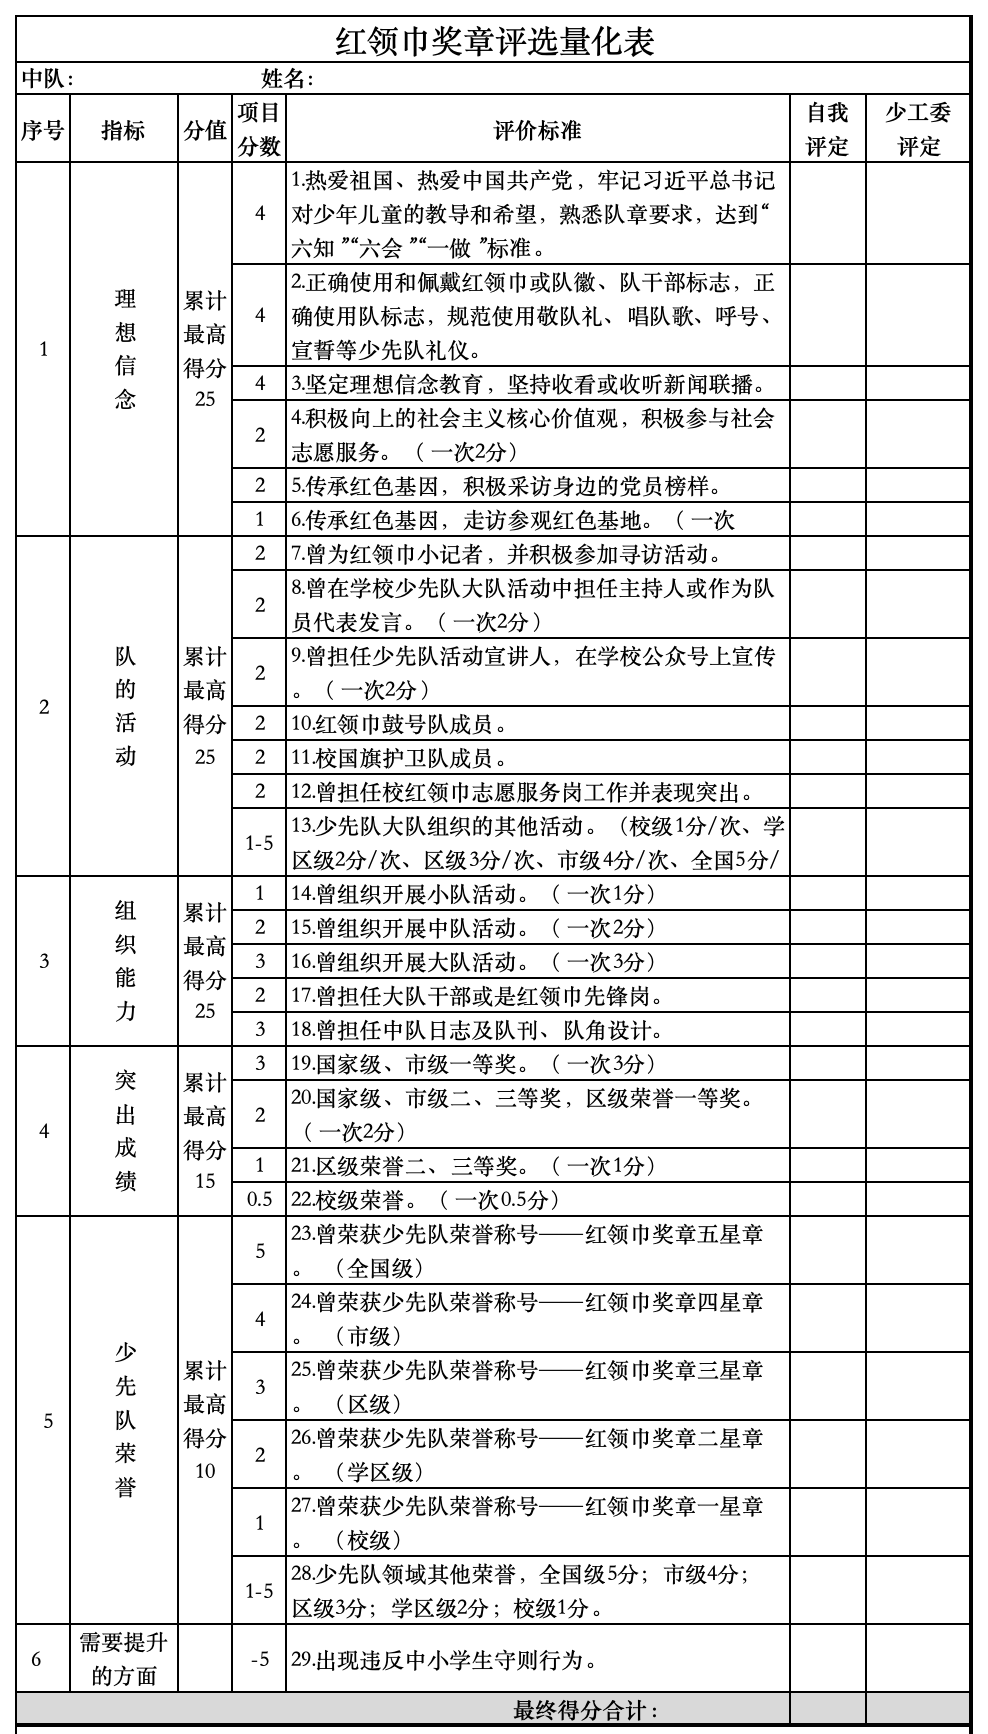 北京市红领巾奖章评选量化表